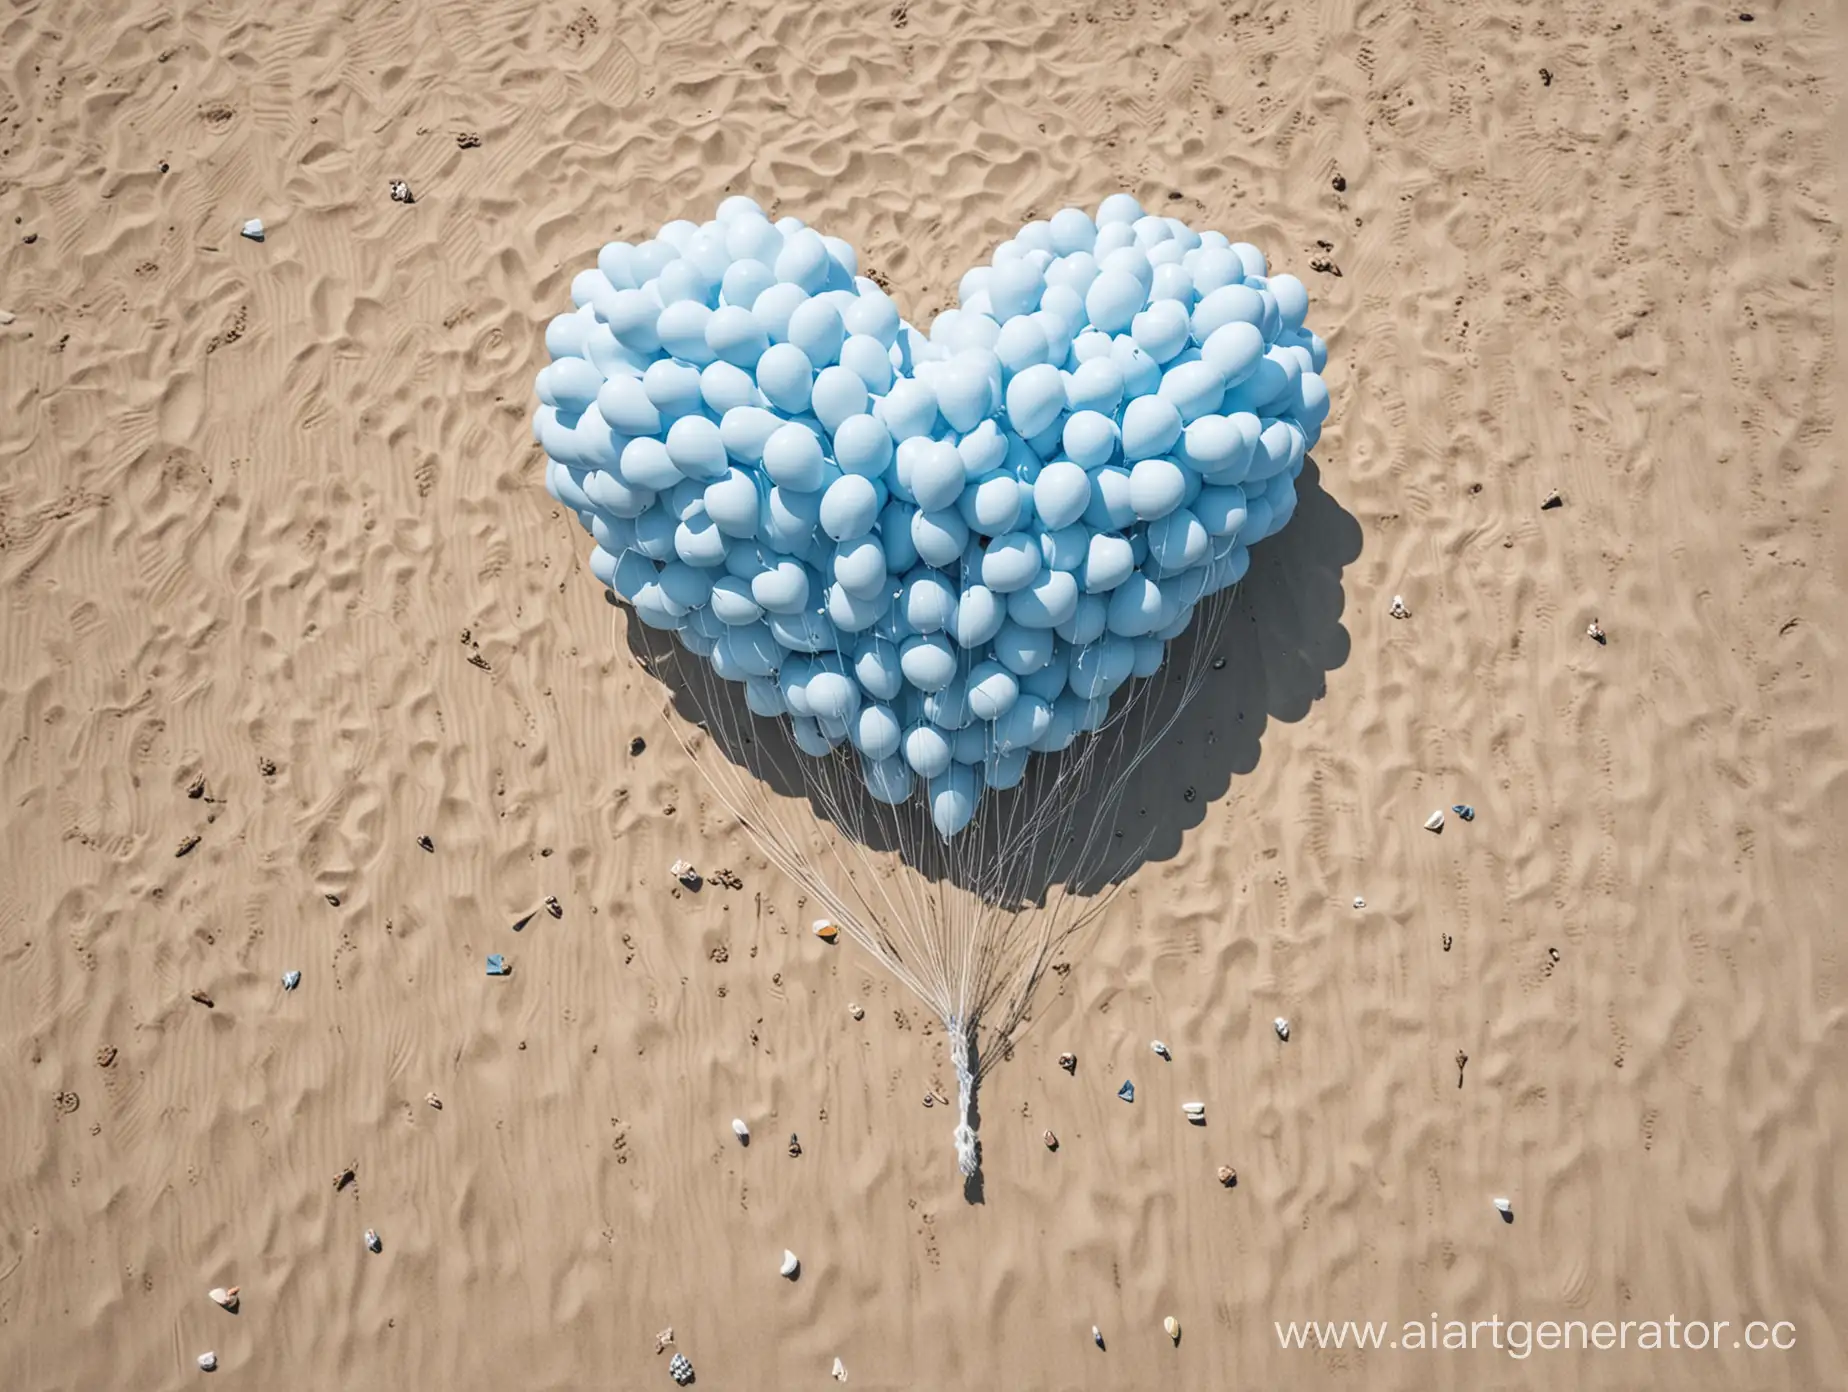 нарисуй фигуру в форме сердце из воздушных шаров бело-голубых оттенков, которое парит на пляже.